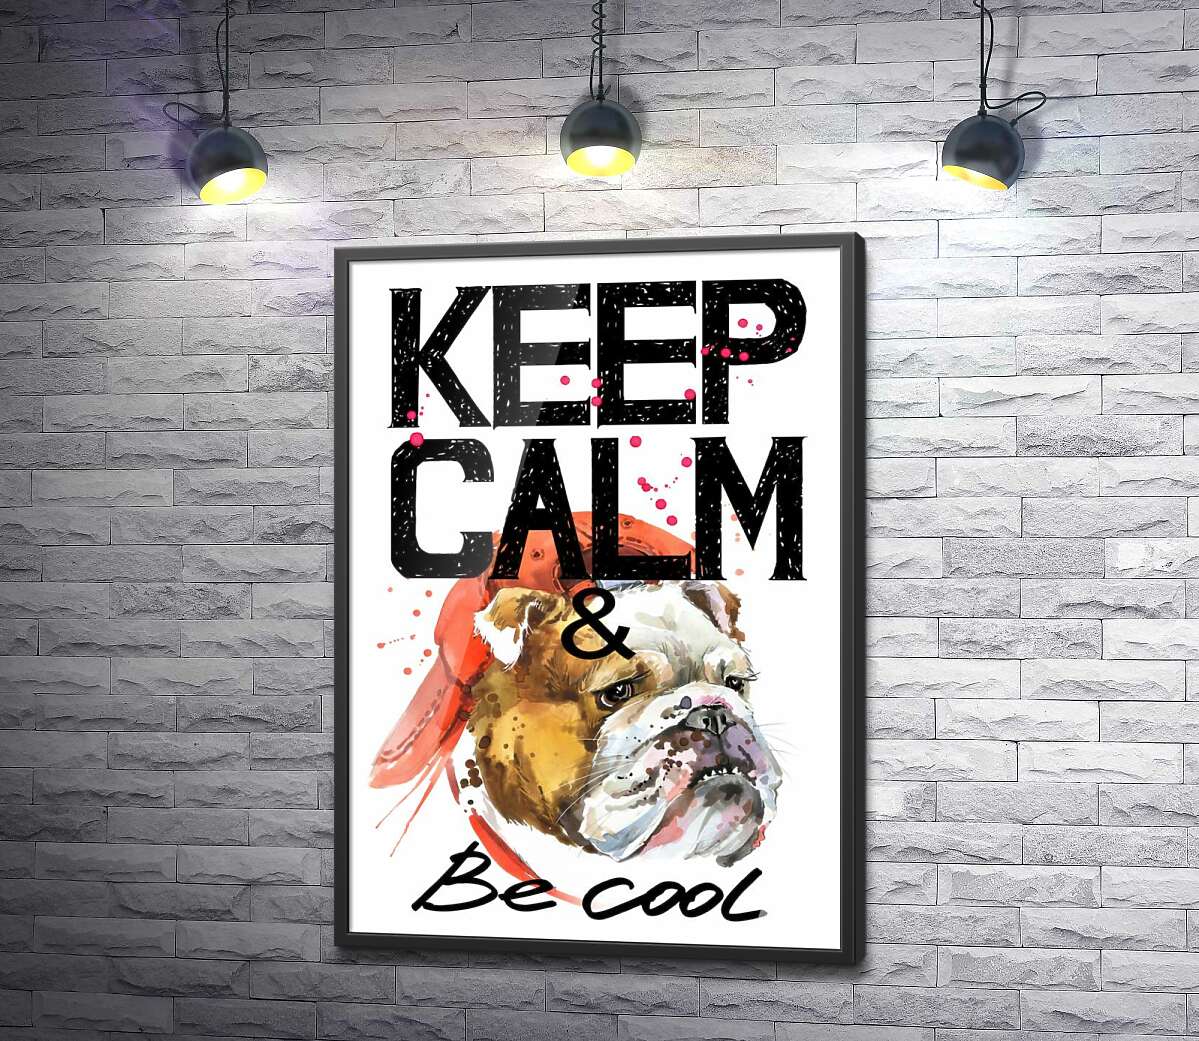 постер Бульдог в червоній кепці серед напису "keep calm and be cool"